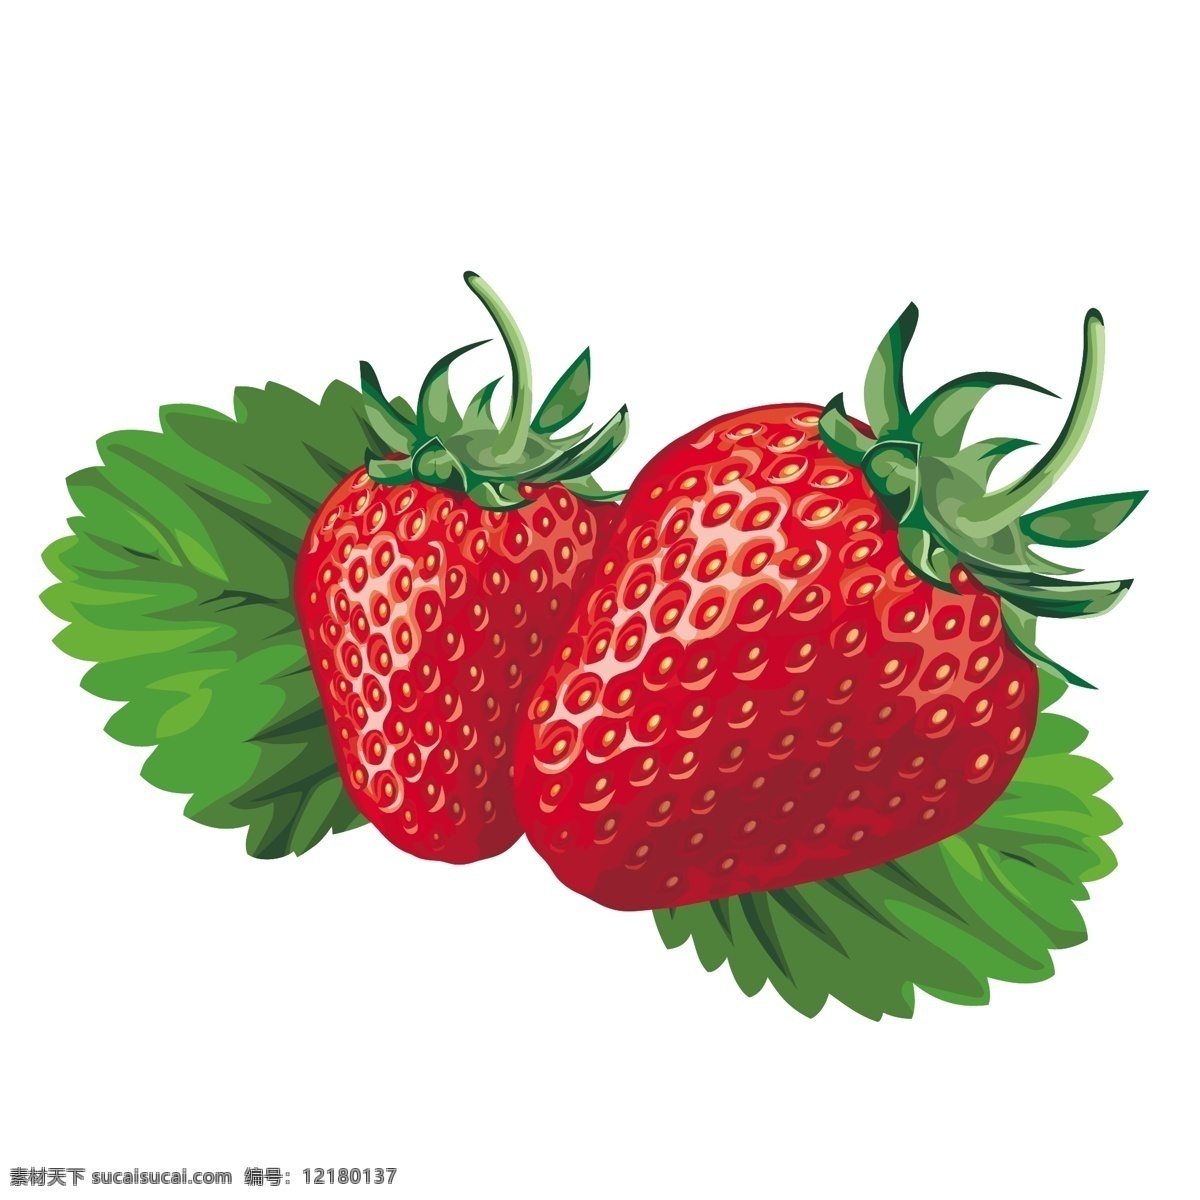 草莓矢量 矢量草莓 矢量水果 果实 叶子 水果 生物世界